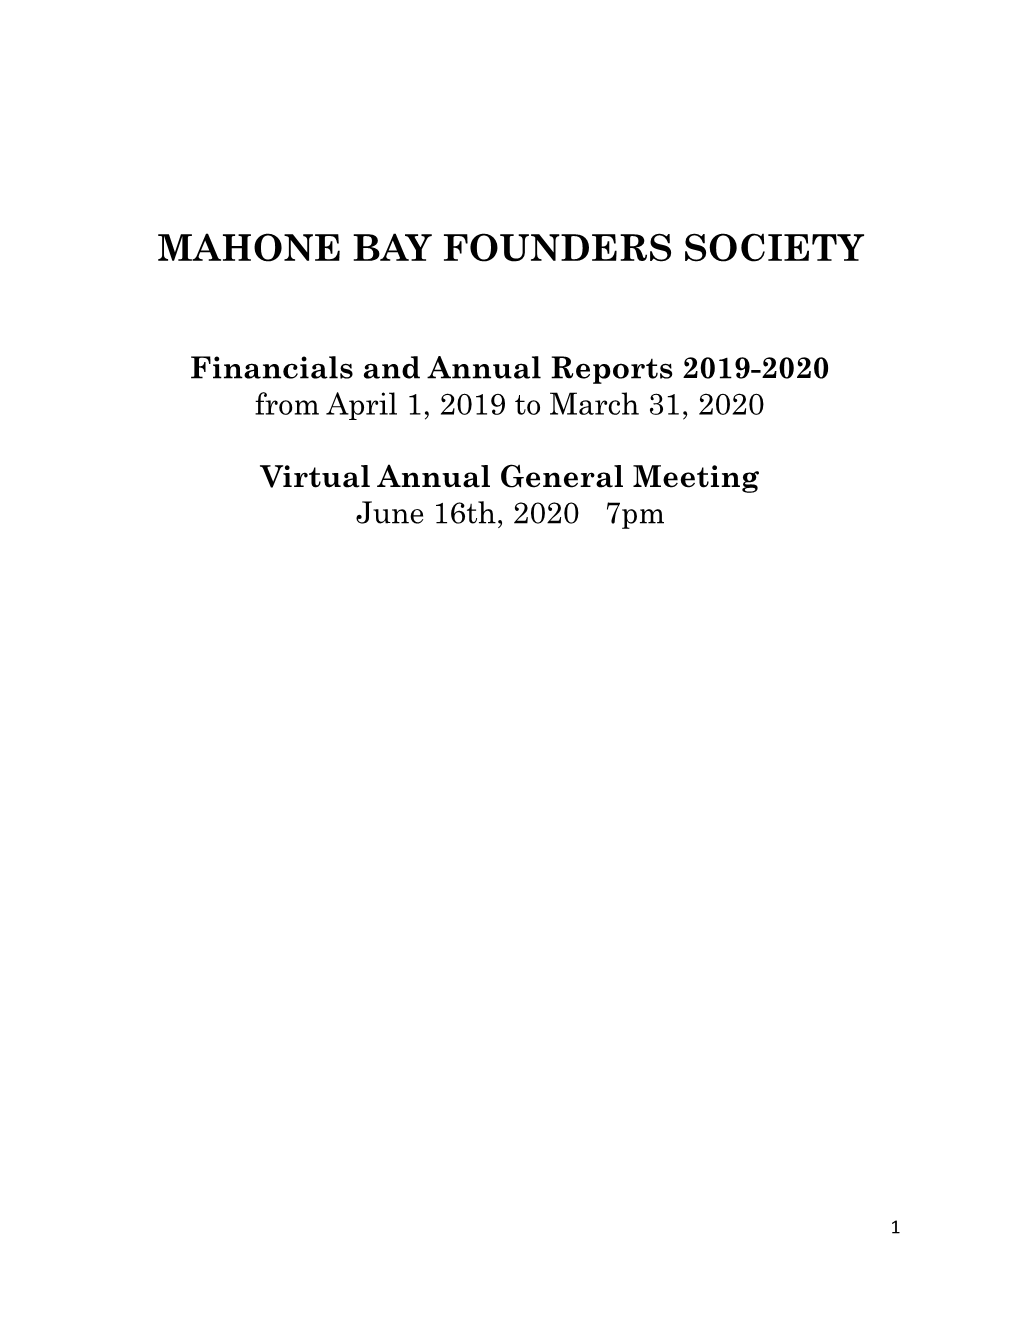 2019-2020 Mahone Bay Founders Society